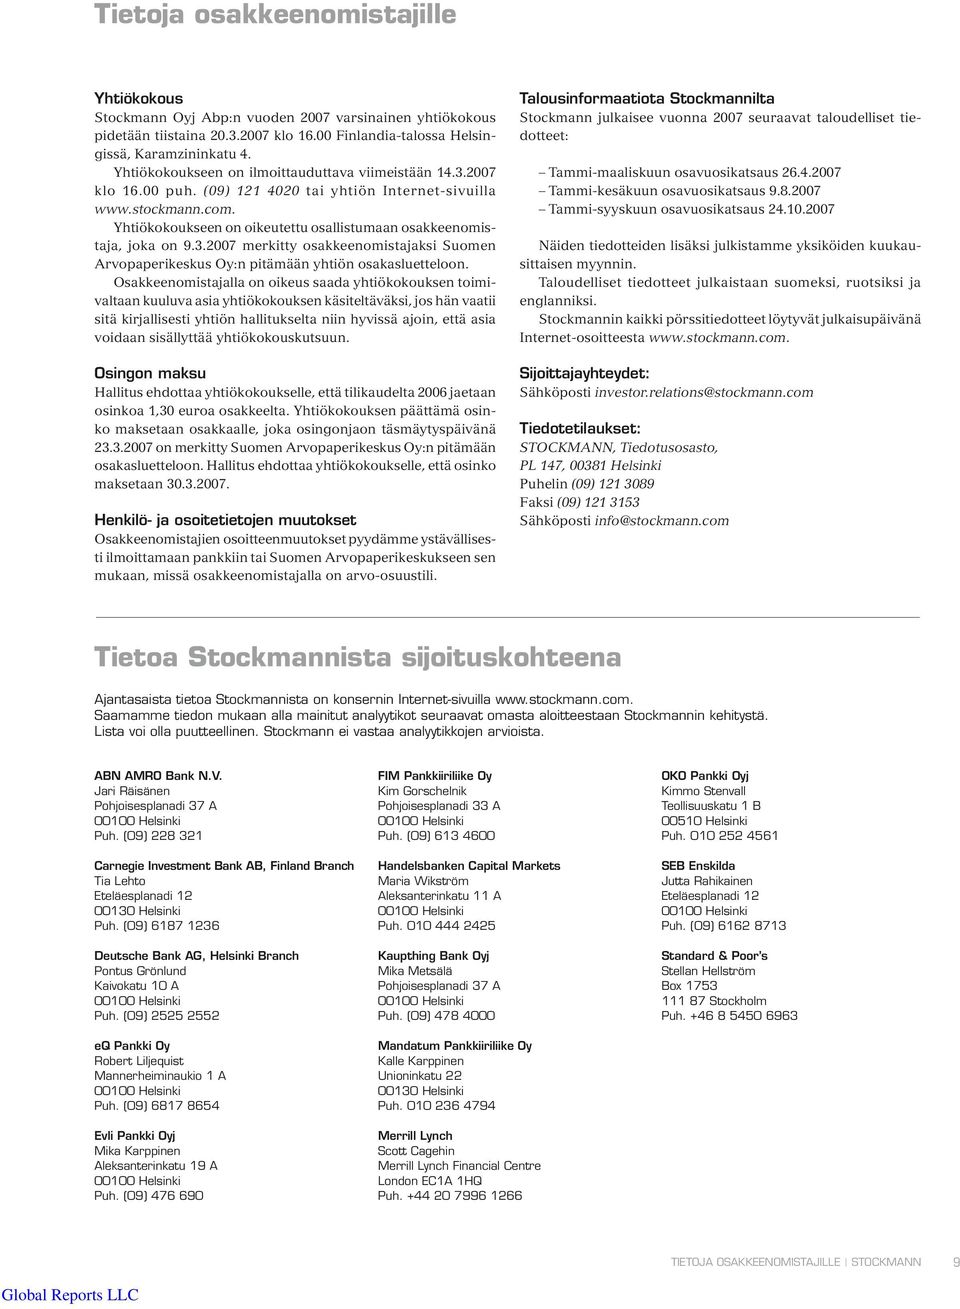 Yhtiökokoukseen on oikeutettu osallistumaan osakkeenomistaja, joka on 9.3.2007 merkitty osakkeenomistajaksi Suomen Arvopaperikeskus Oy:n pitämään yhtiön osakasluetteloon.